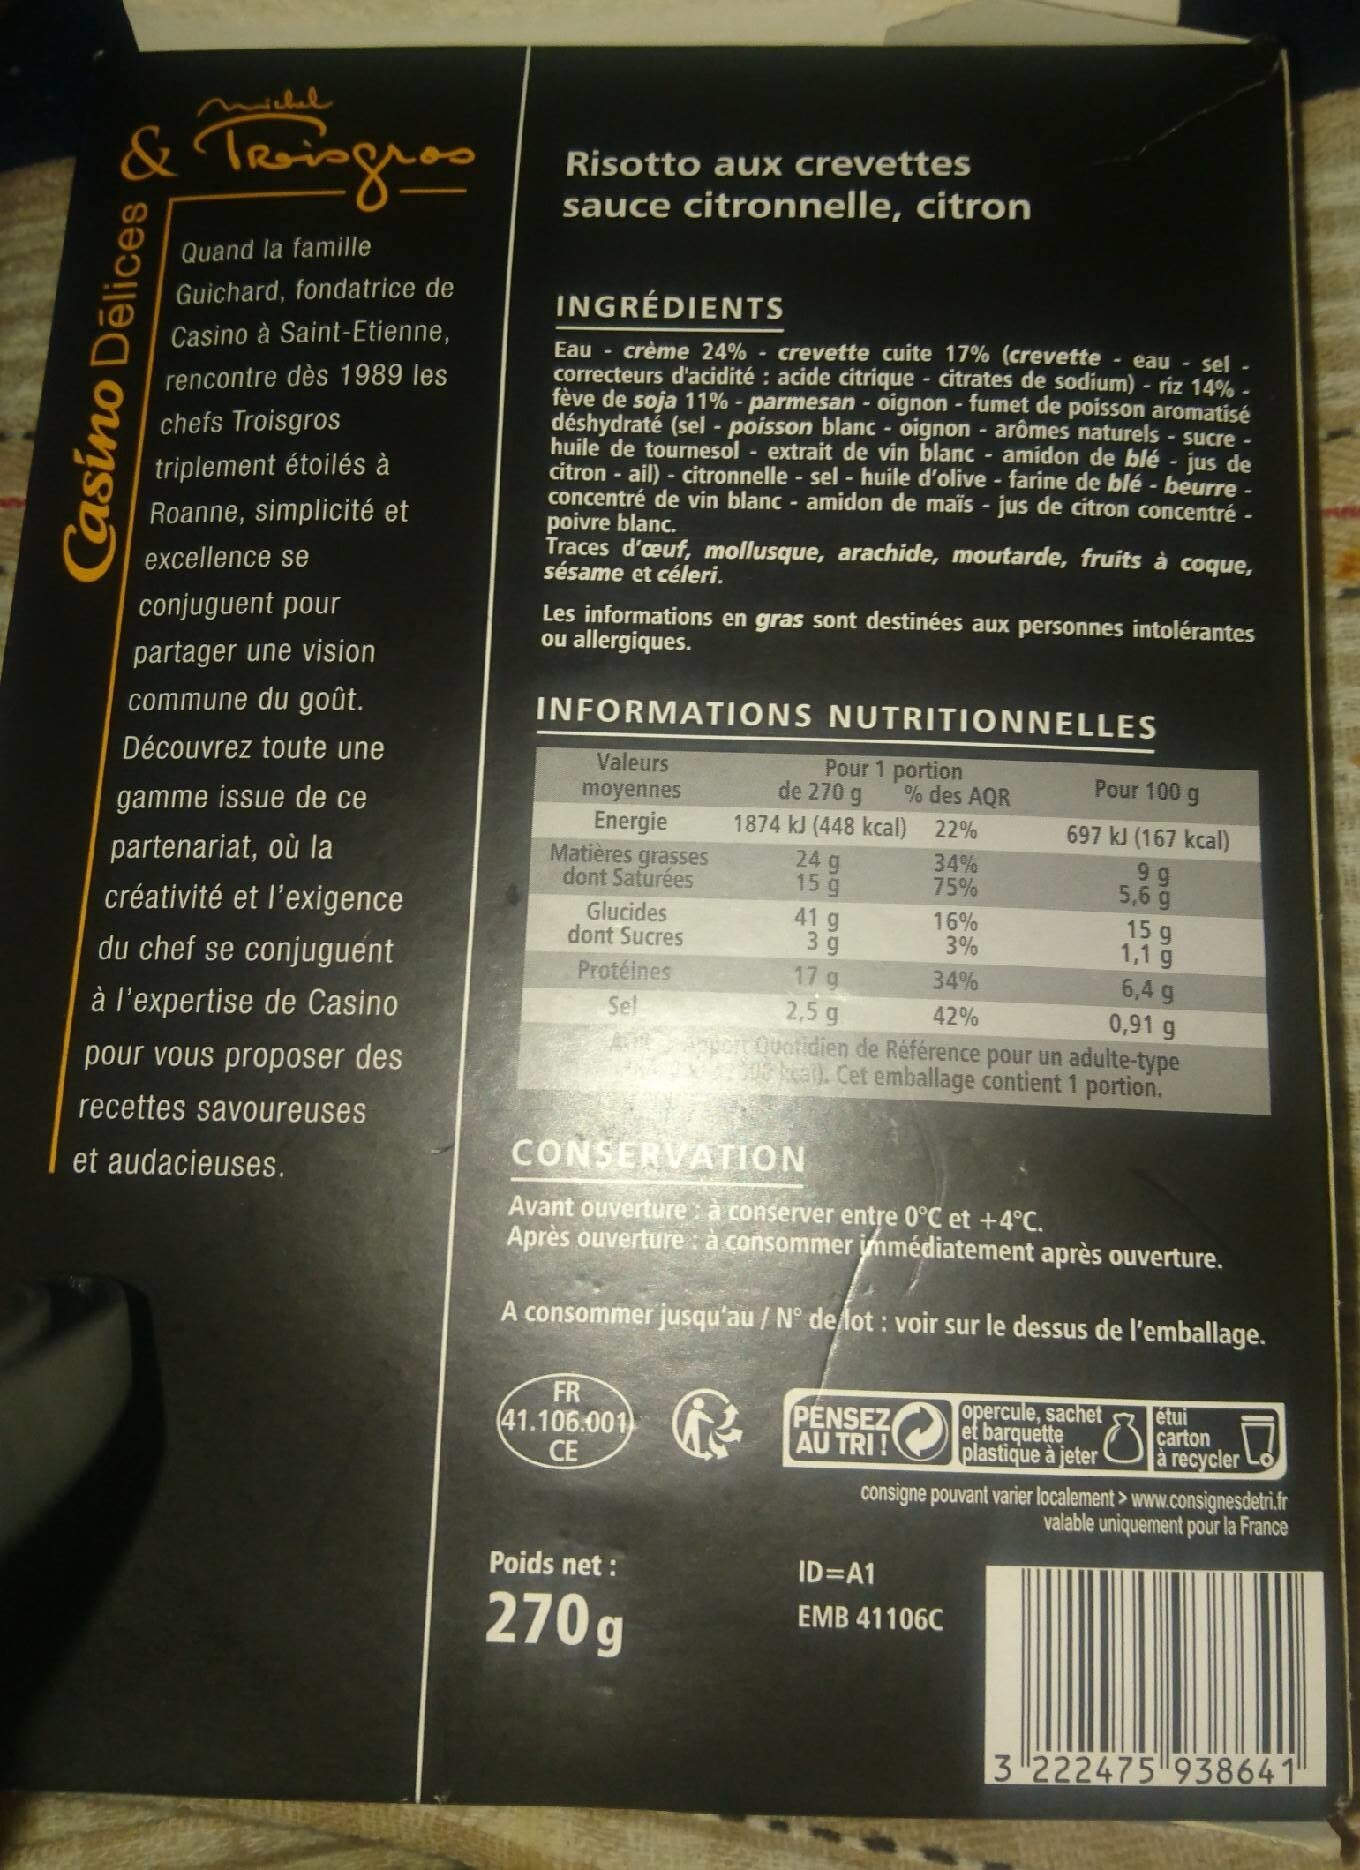 Risotto aux crevettes sauce citronnelle  citron - Nutrition facts - fr